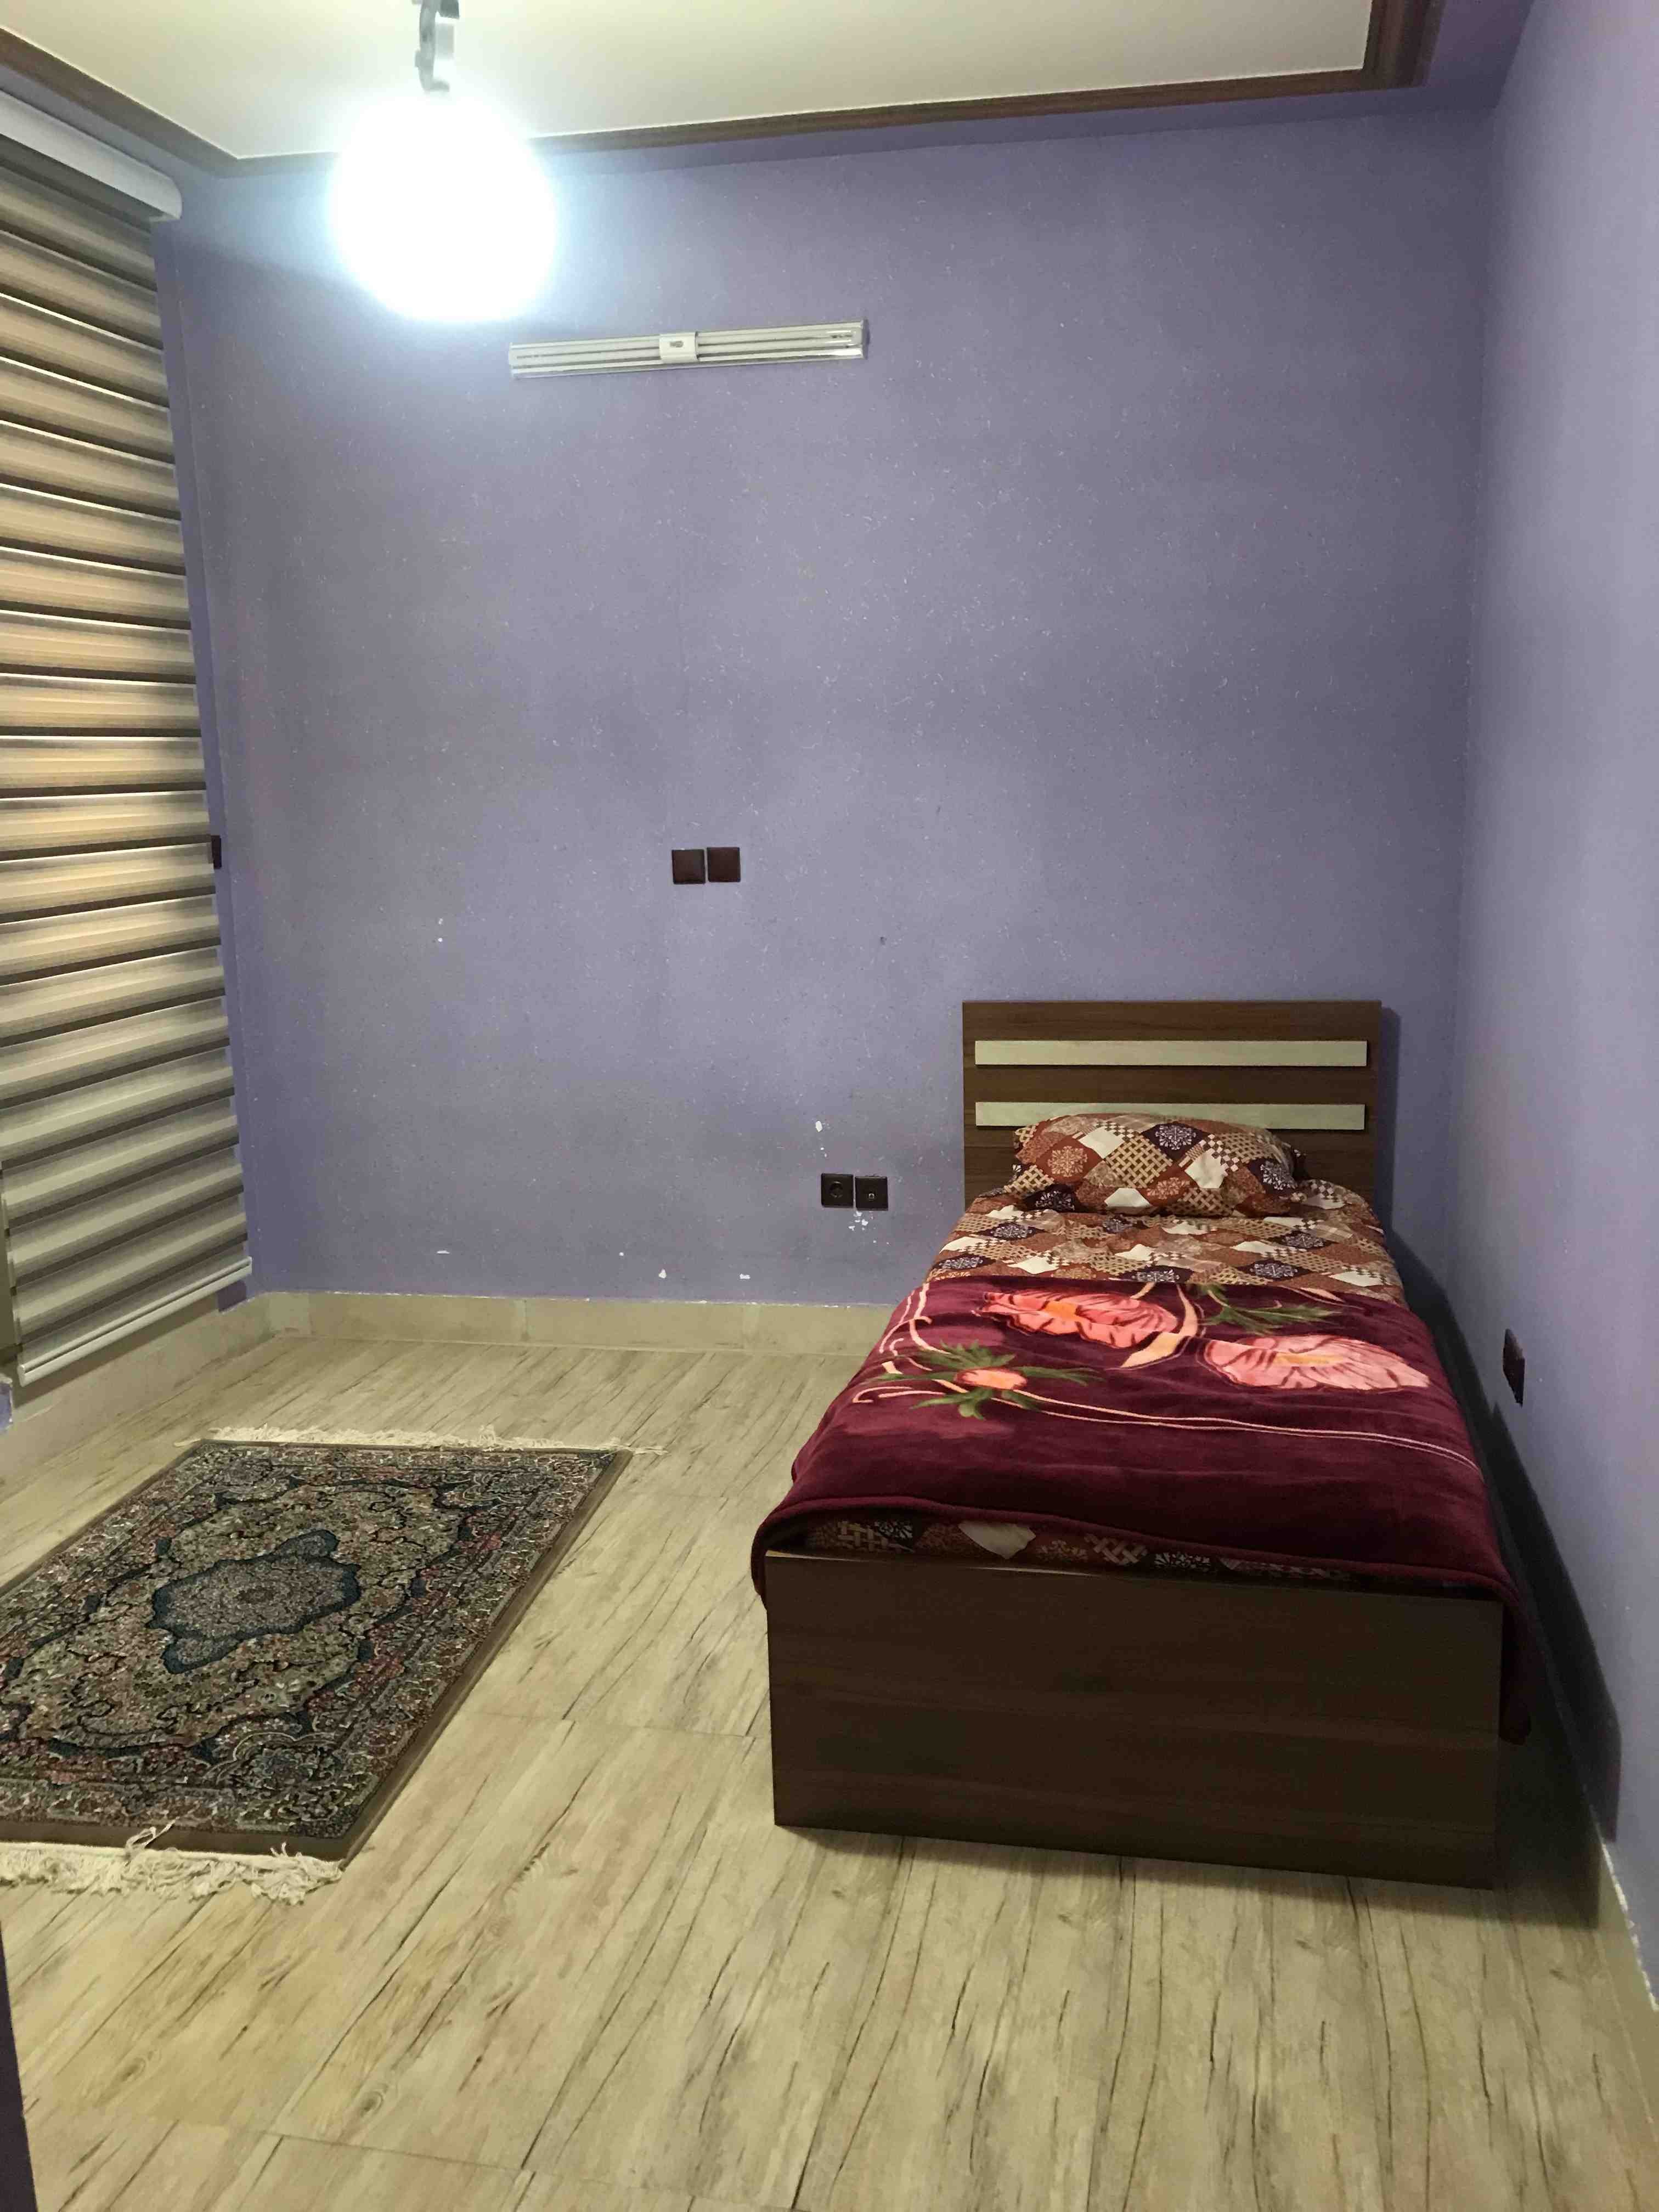 شهری آپارتمان دو خواب در دلگشا شیراز 